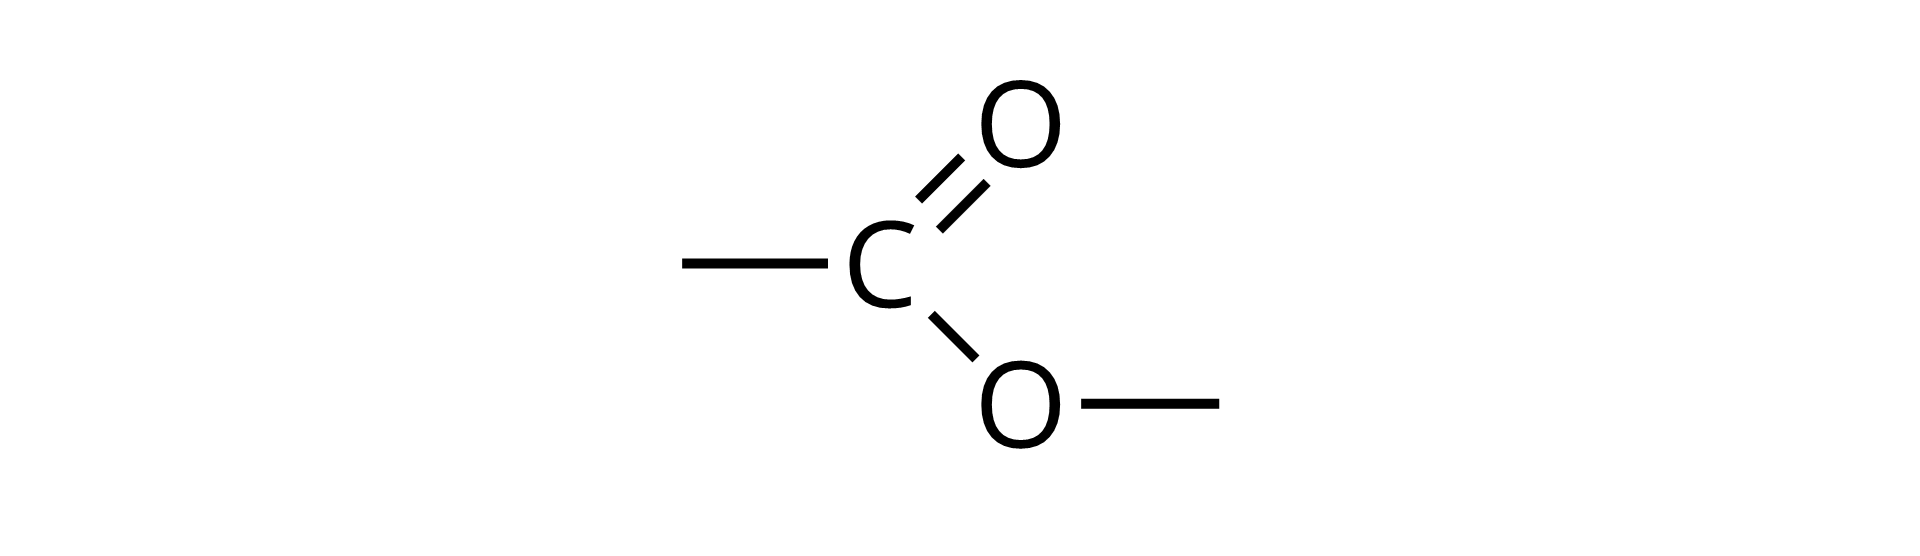 Na ilustracji przedstawiono wzór strukturalny grupy estrowej.  Atom węgla tworzy wiązanie podwójne z atomem tlenu oraz wiązanie pojedyncze z drugim atomem tlenu.